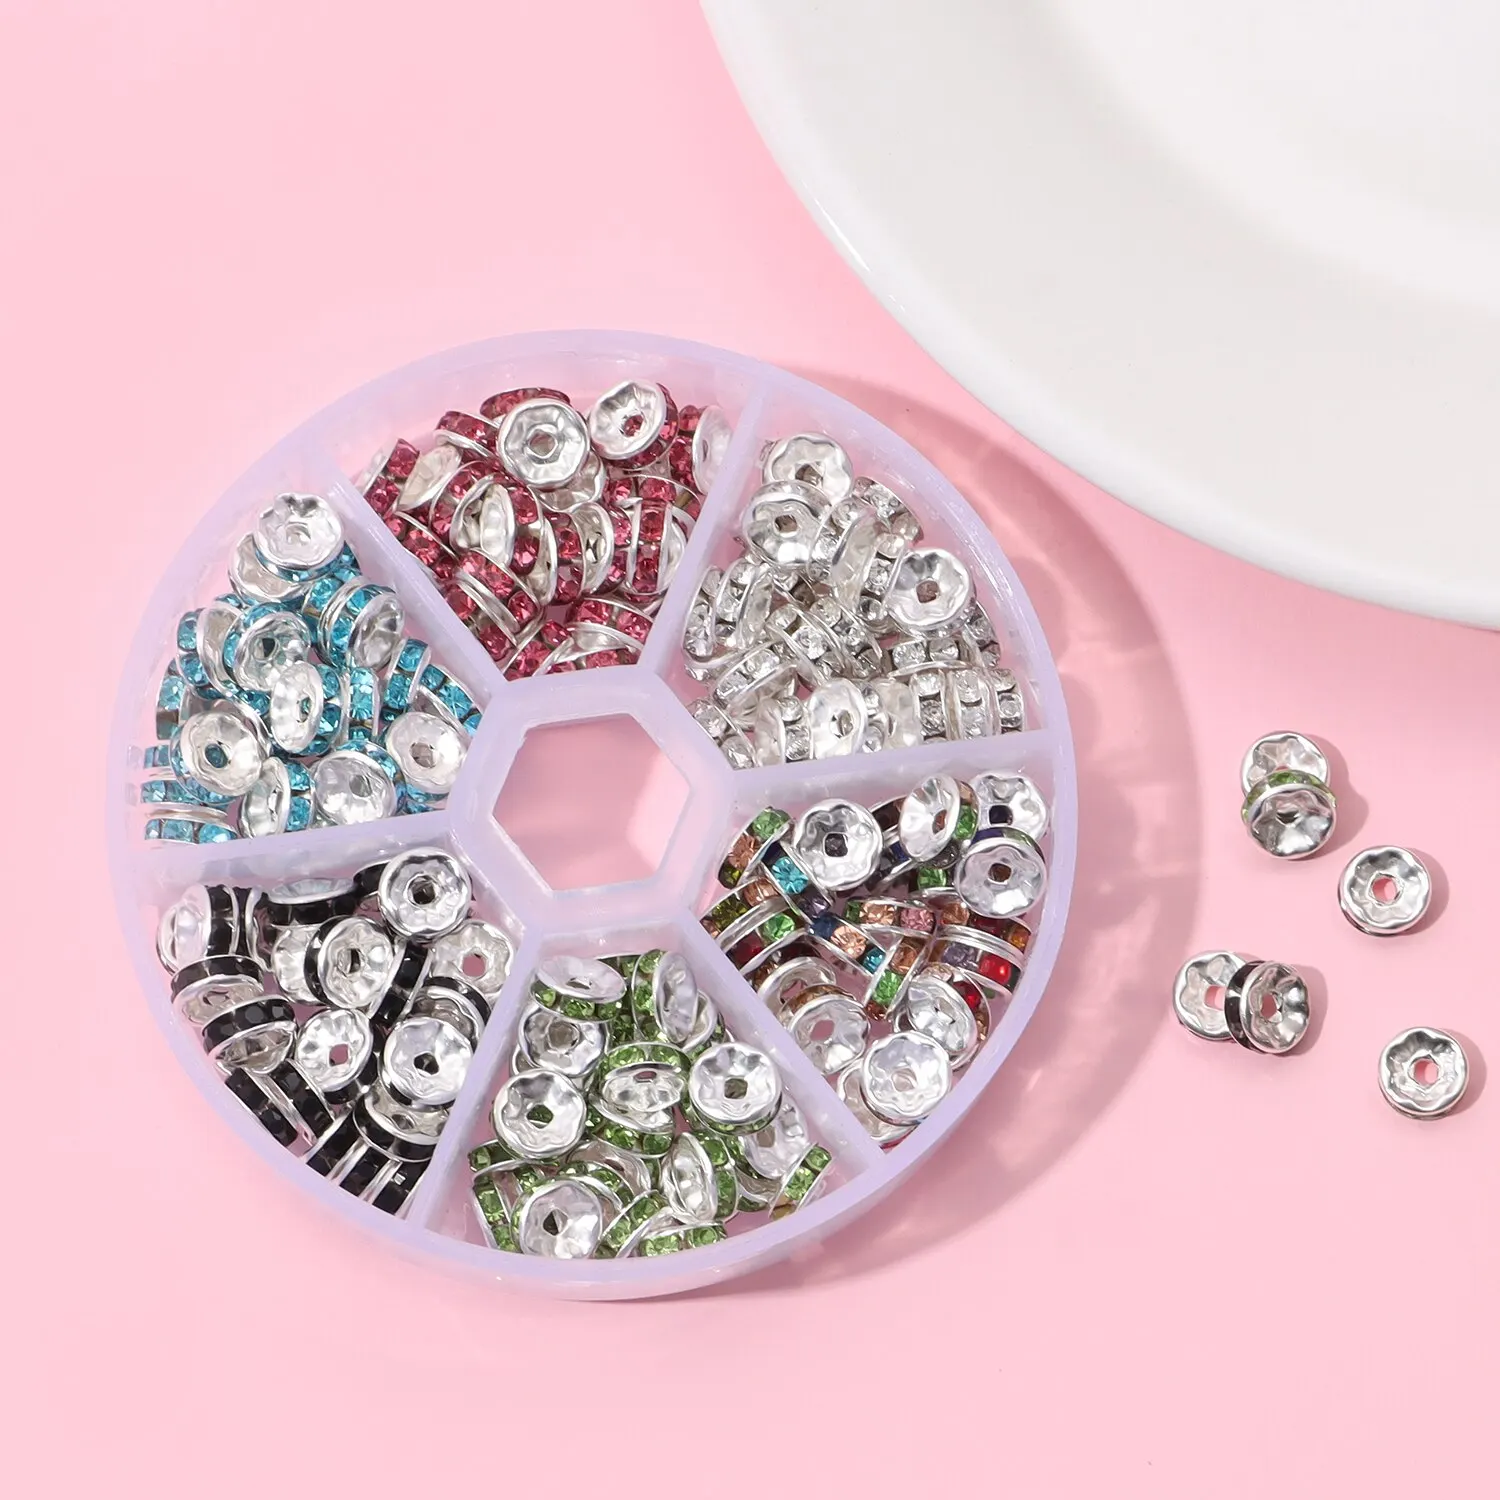 Wielafstander 180 stcs/doos kralen spacer ronde kleur diamantring diamant spacer diy sieraden accessoires handgemaakt